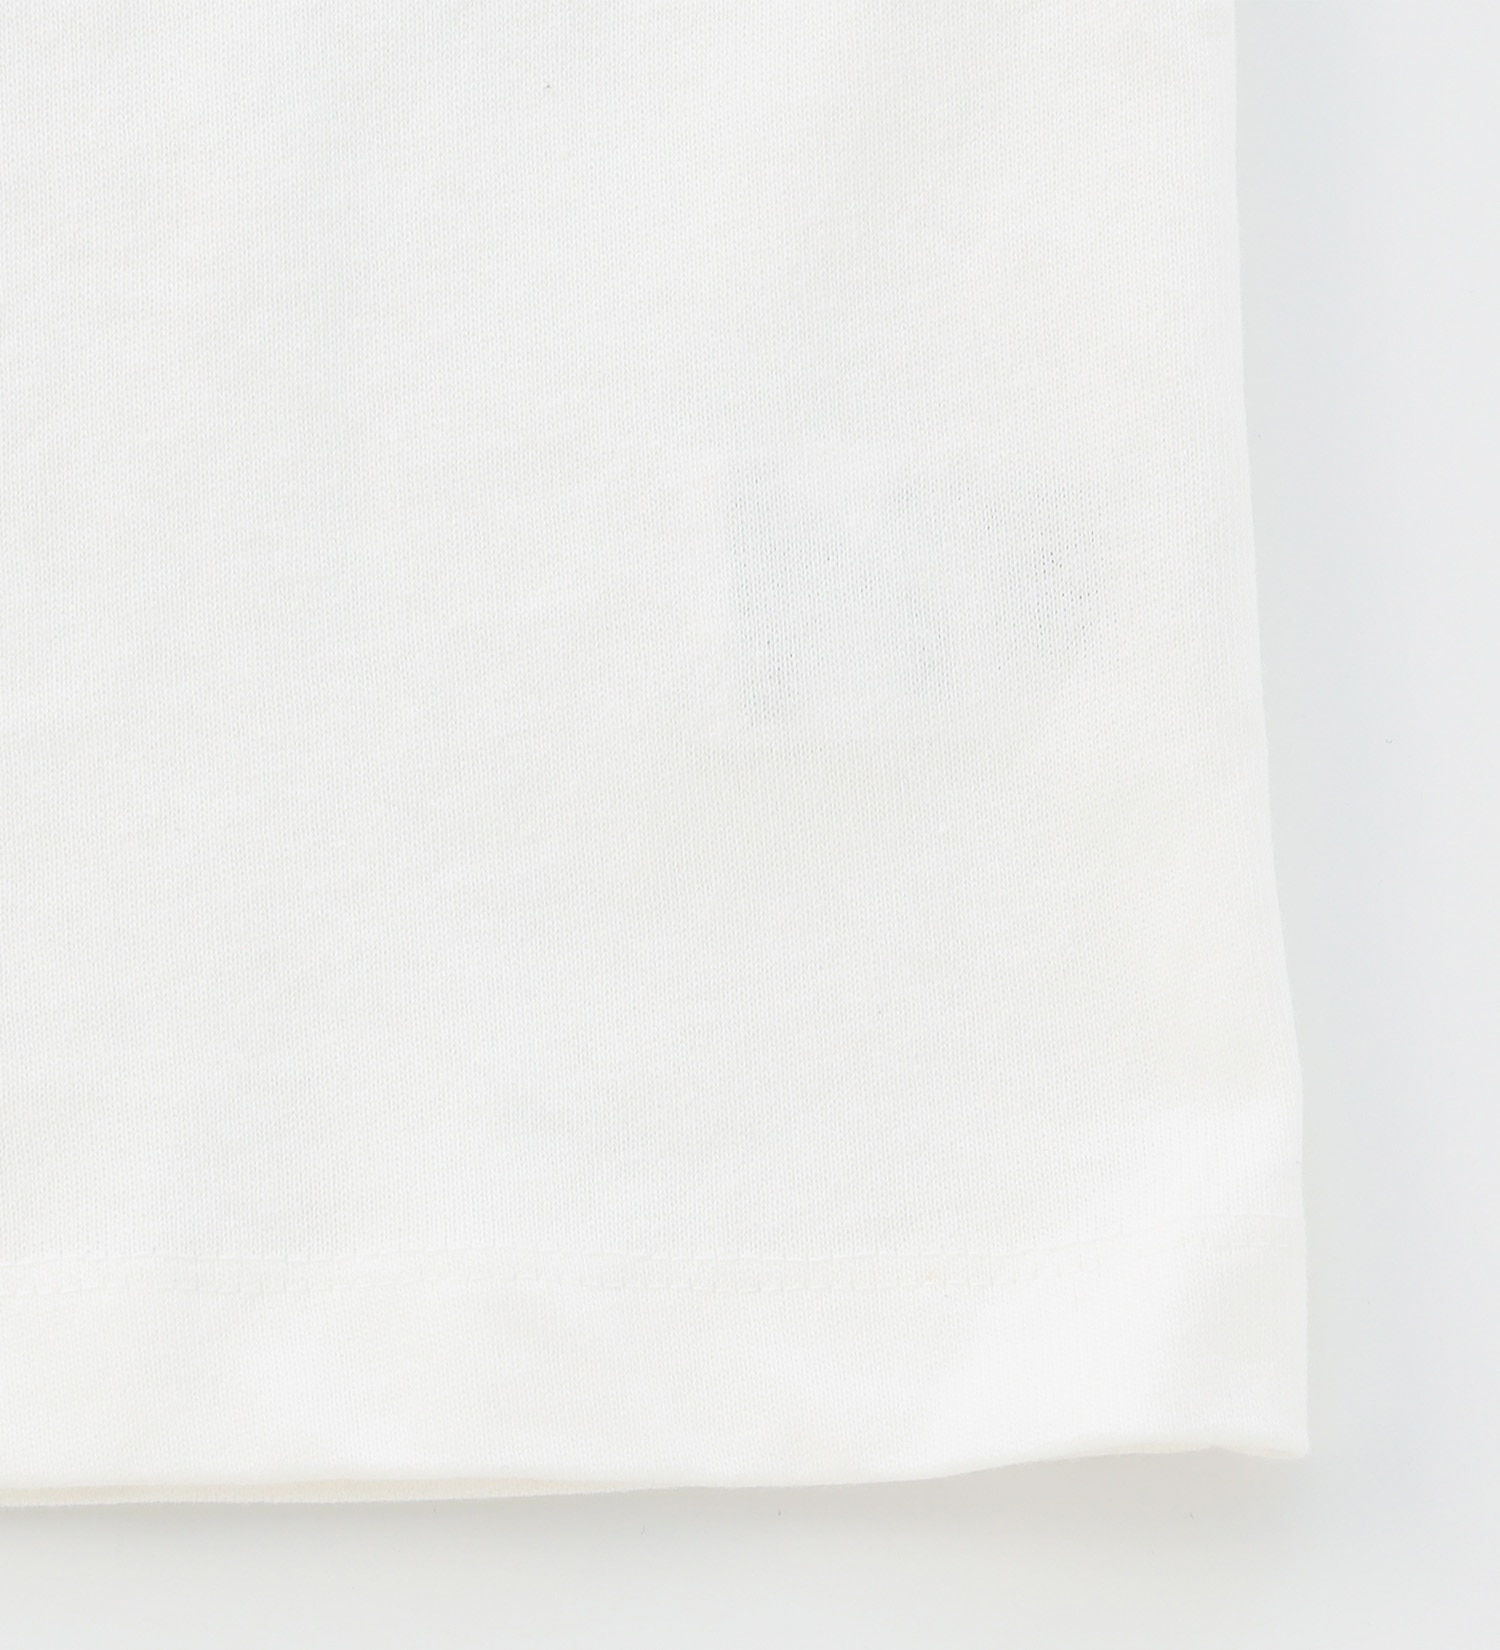 EDWIN(エドウイン)の【BLACKFRIDAY】手書き風プリントTシャツ 半袖（コーヒー）【アウトレット店舗・WEB限定】|トップス/Tシャツ/カットソー/レディース|ホワイト